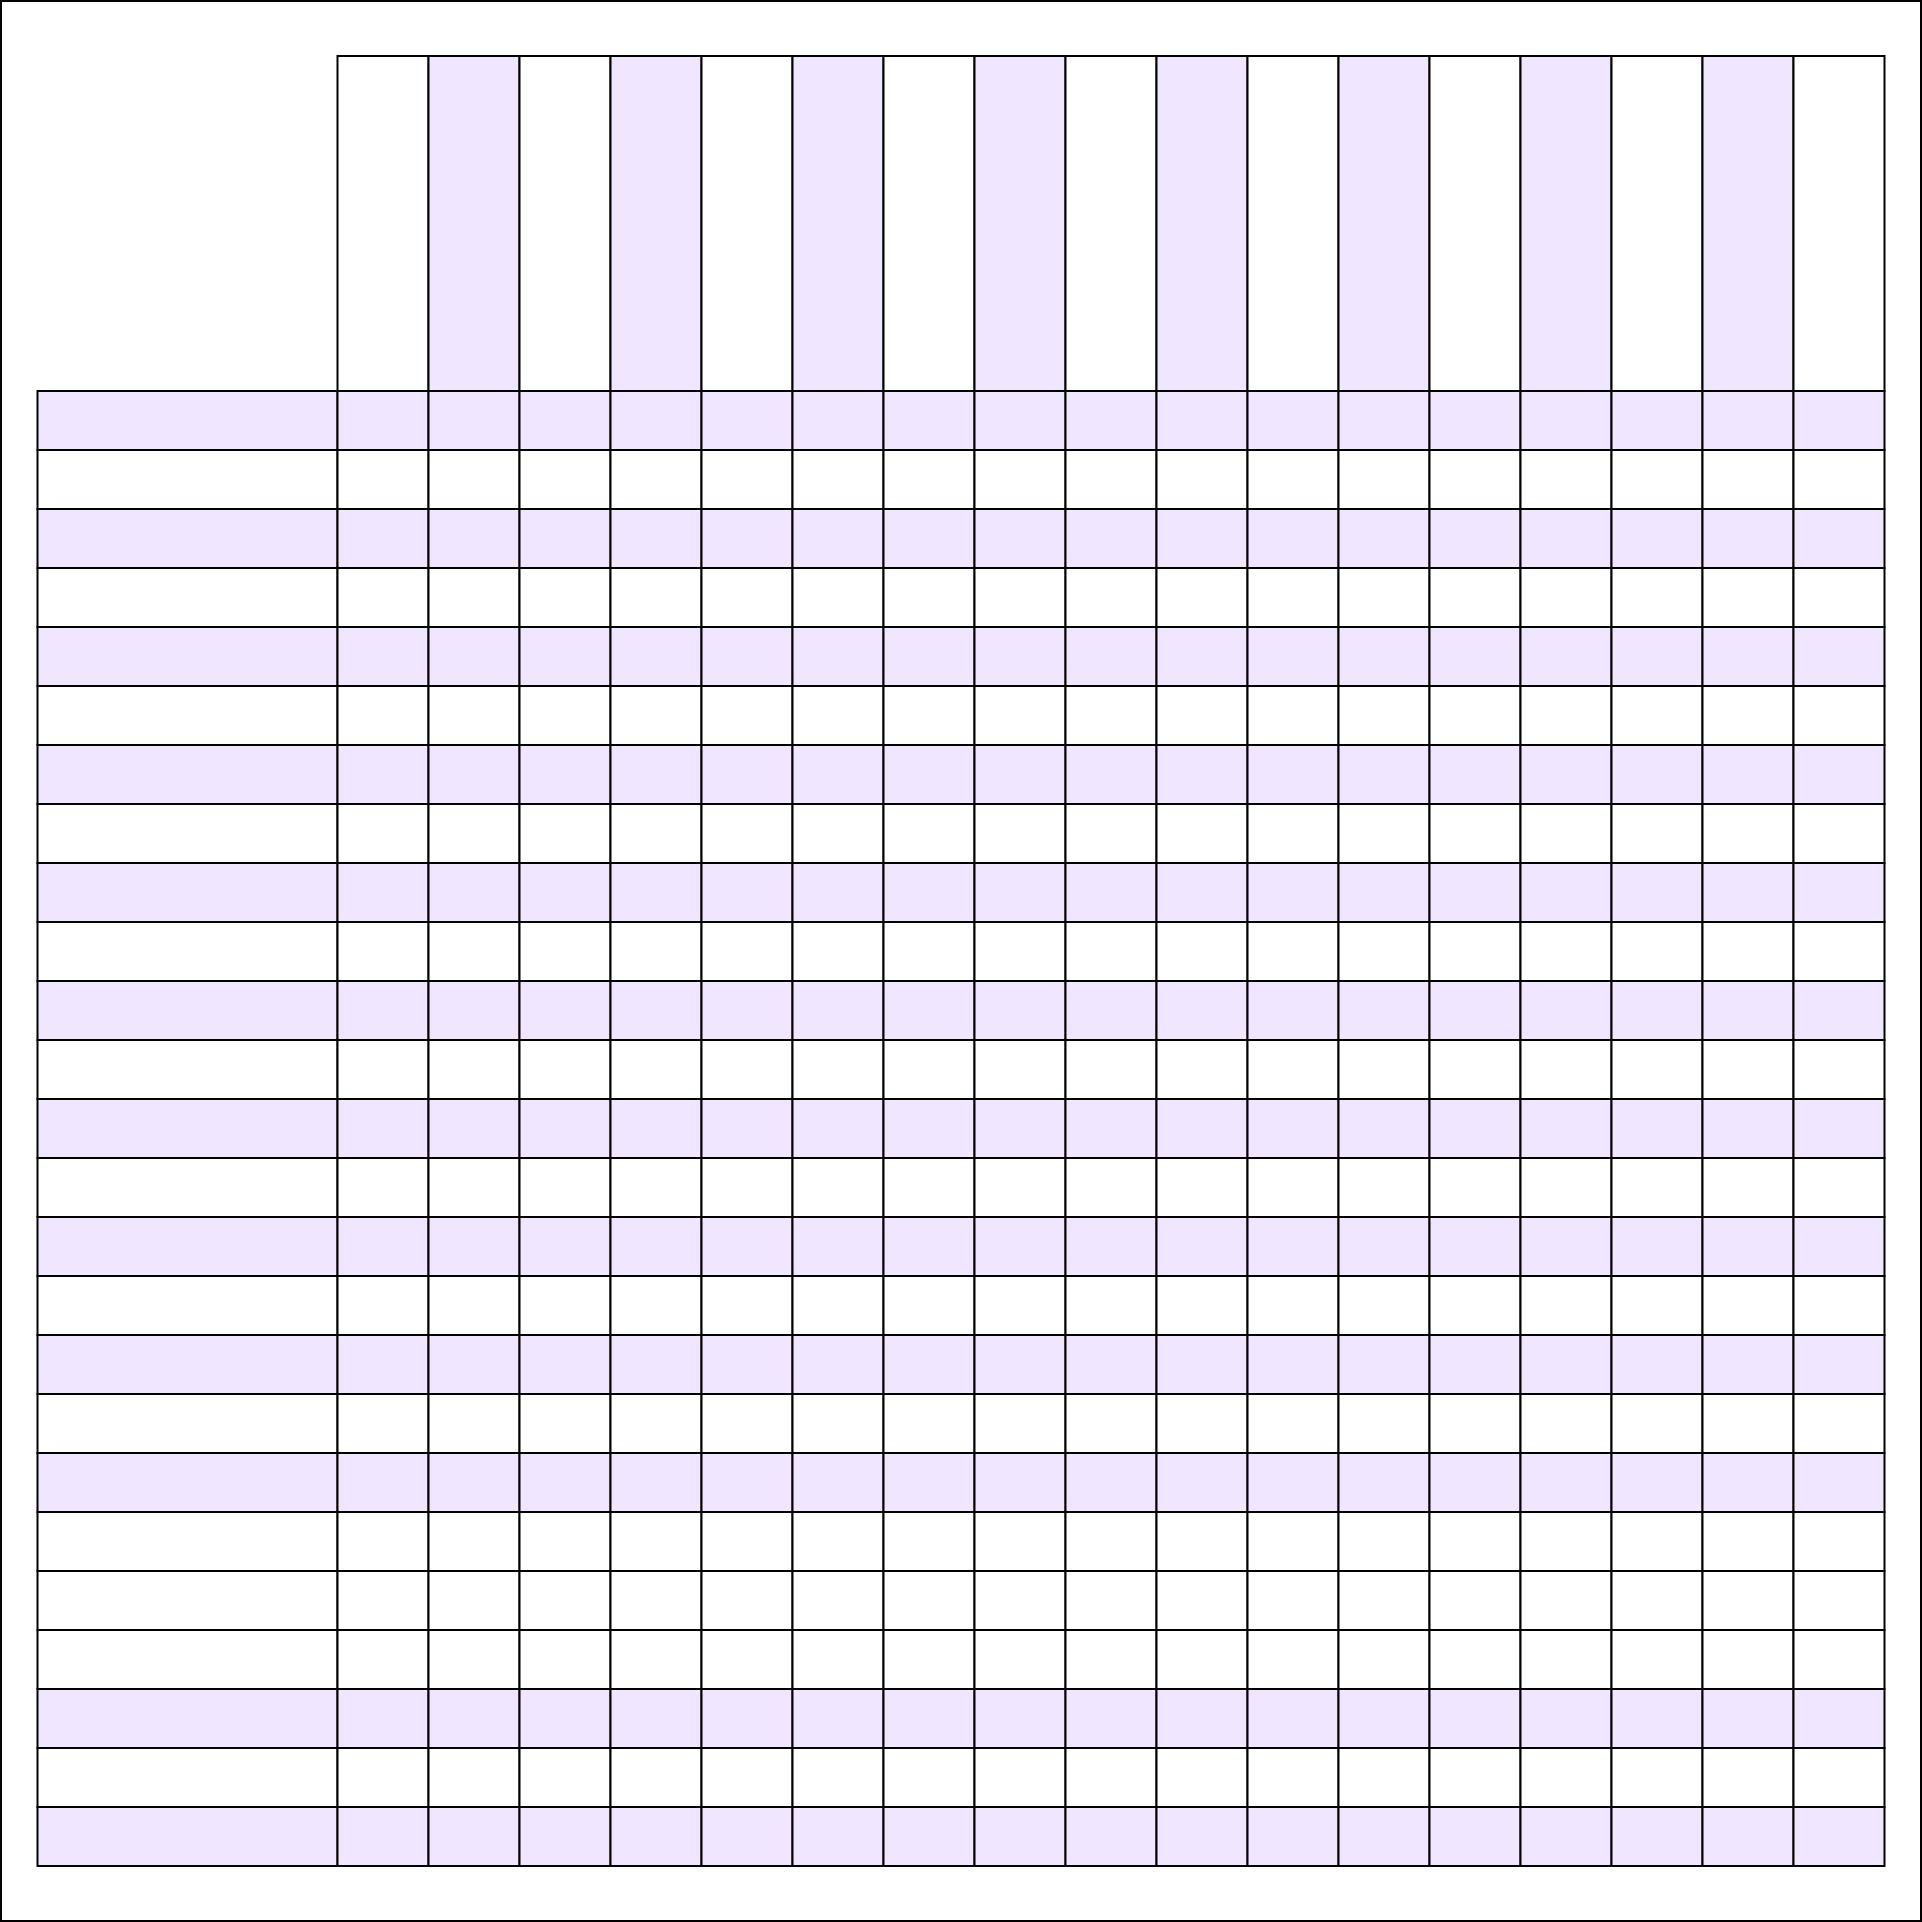 Printable Charts Blank